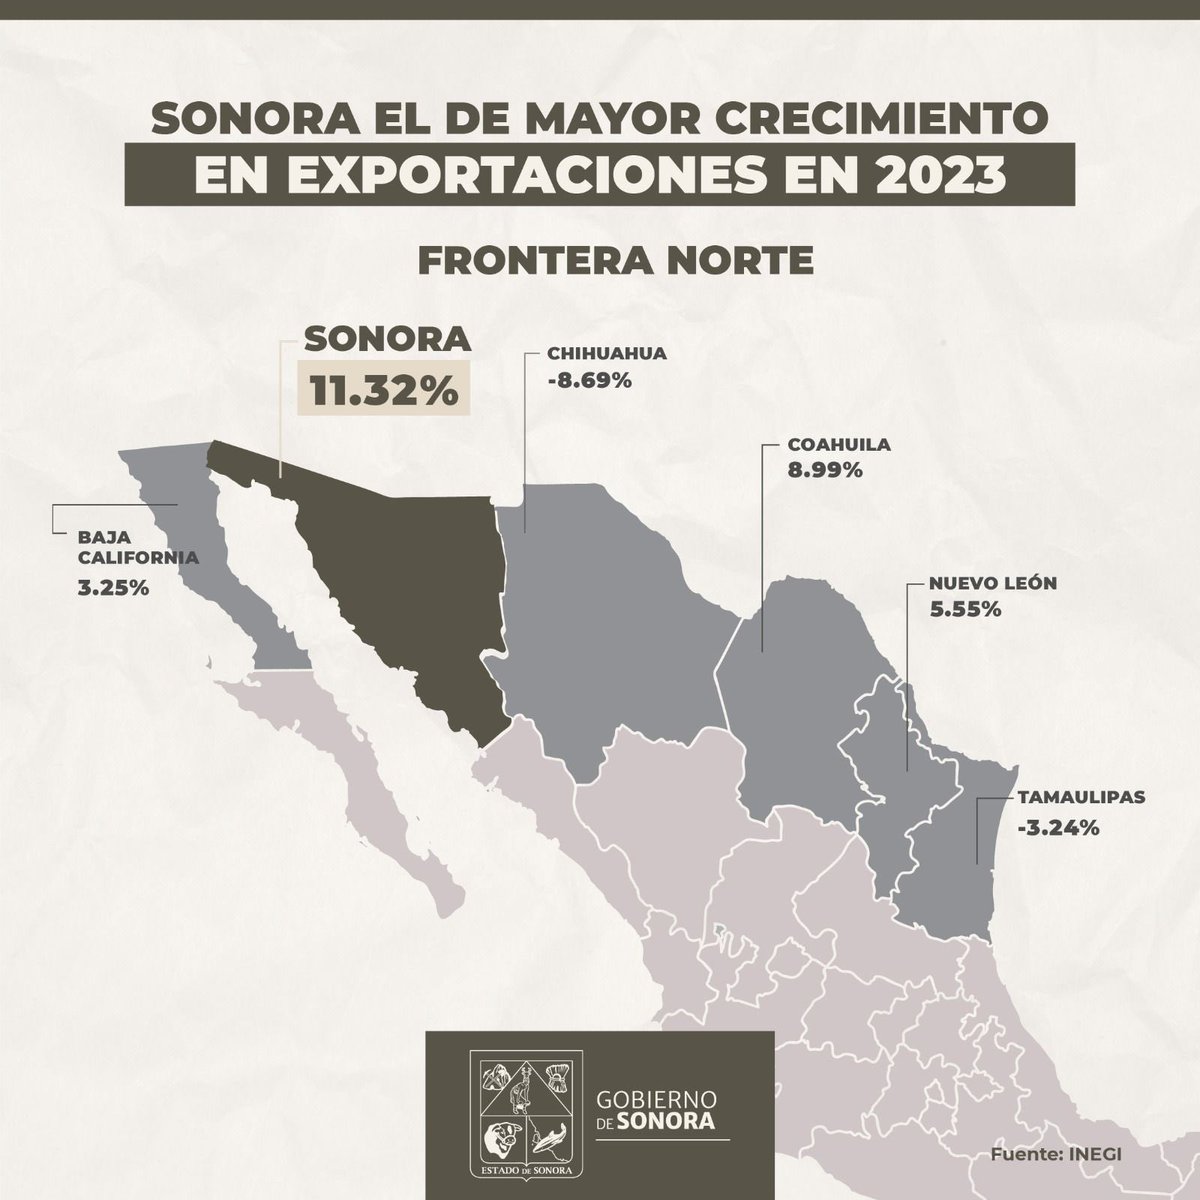 Les comparto que, de acuerdo al INEGI, Sonora se posiciona en el primer lugar de la frontera norte con el mayor crecimiento en exportaciones anuales. Gracias a la llegada de más inversión extranjera, se han formalizado más empleos en la industria de la transformación en el…